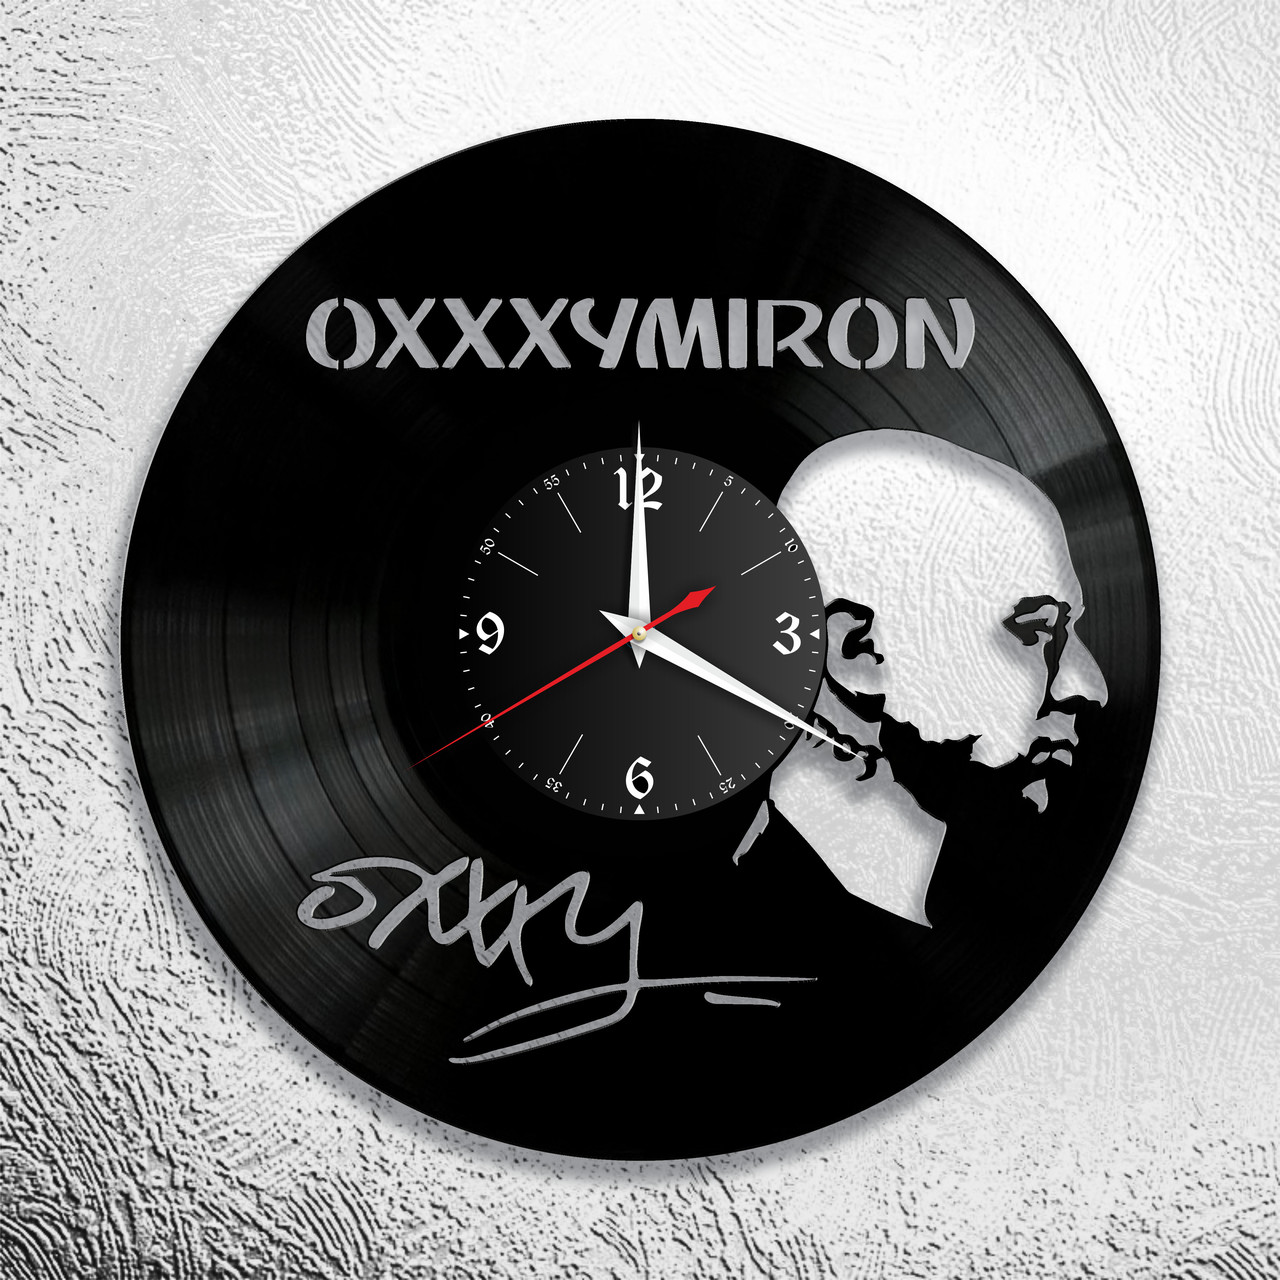 Оригинальные часы из виниловых пластинок "Оксимирон" версия 1